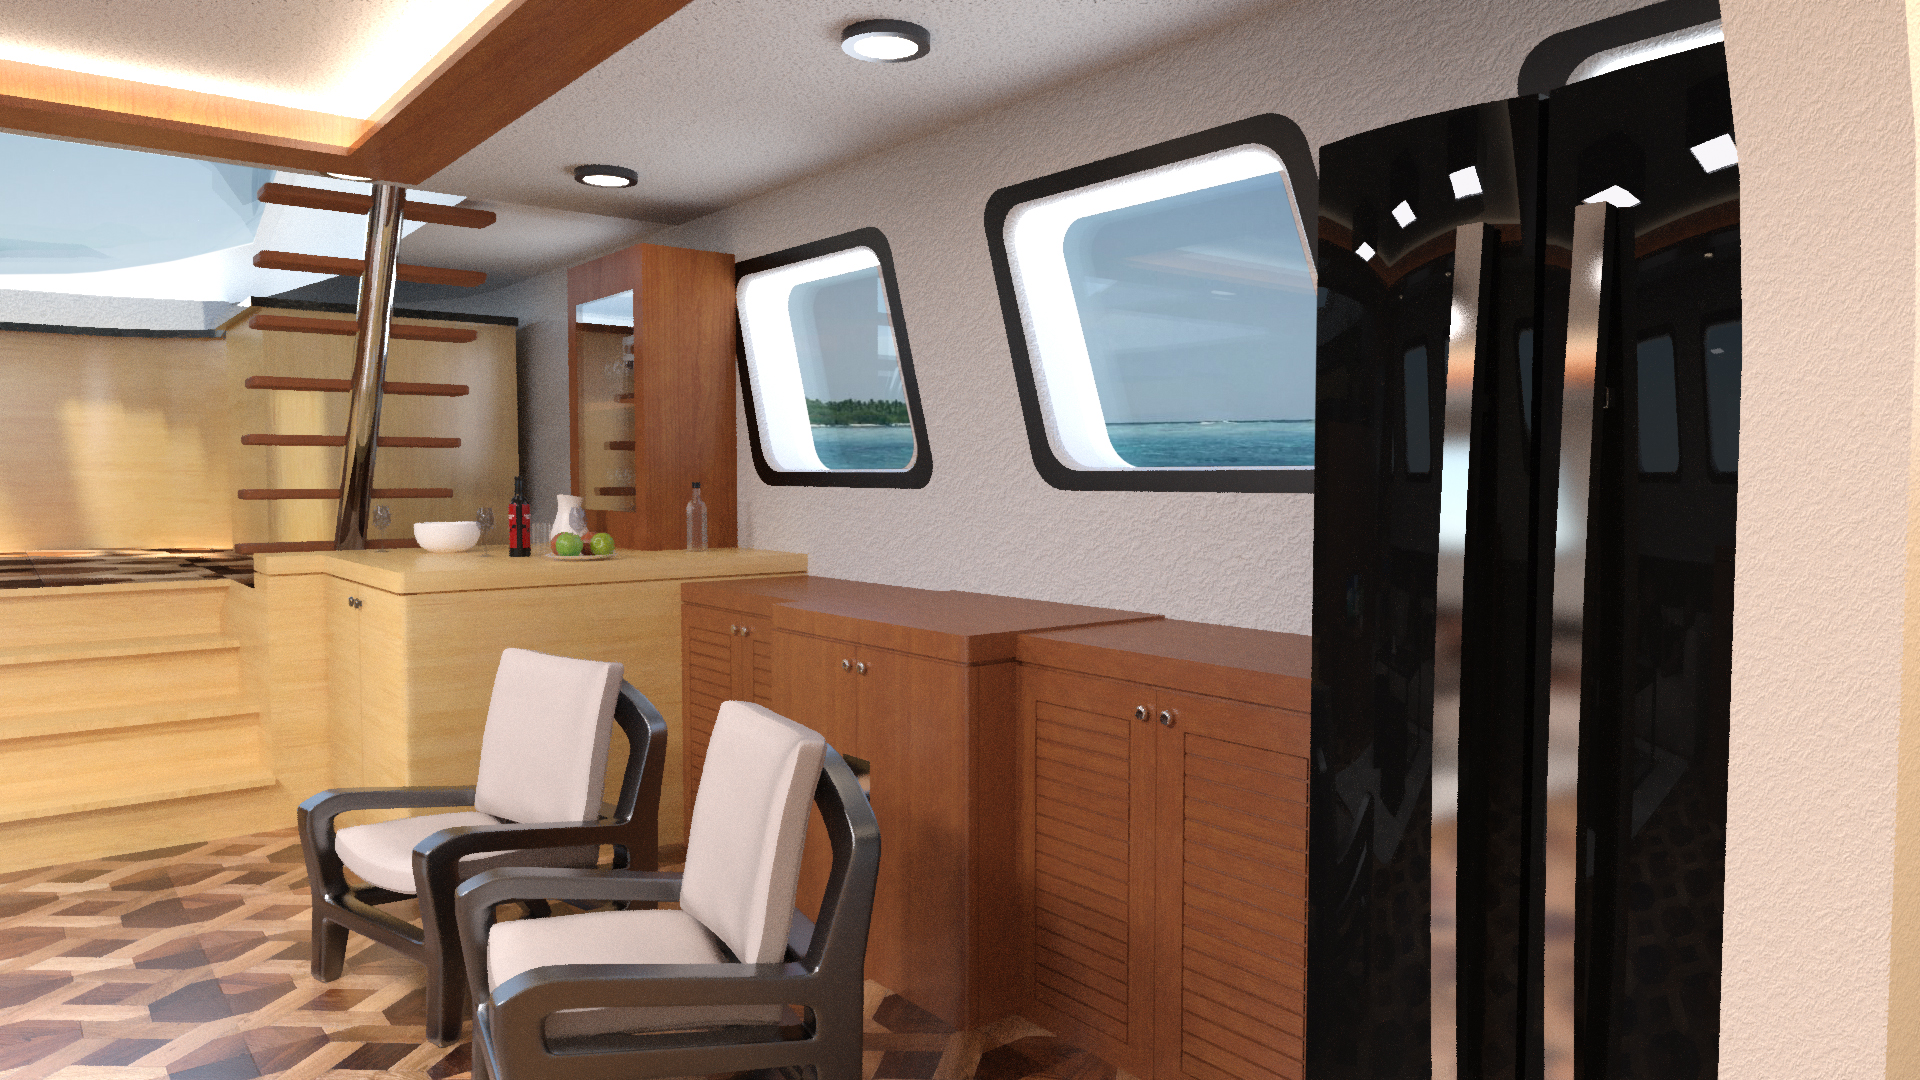 Yacht Salon by: Tesla3dCorp, 3D Models by Daz 3D